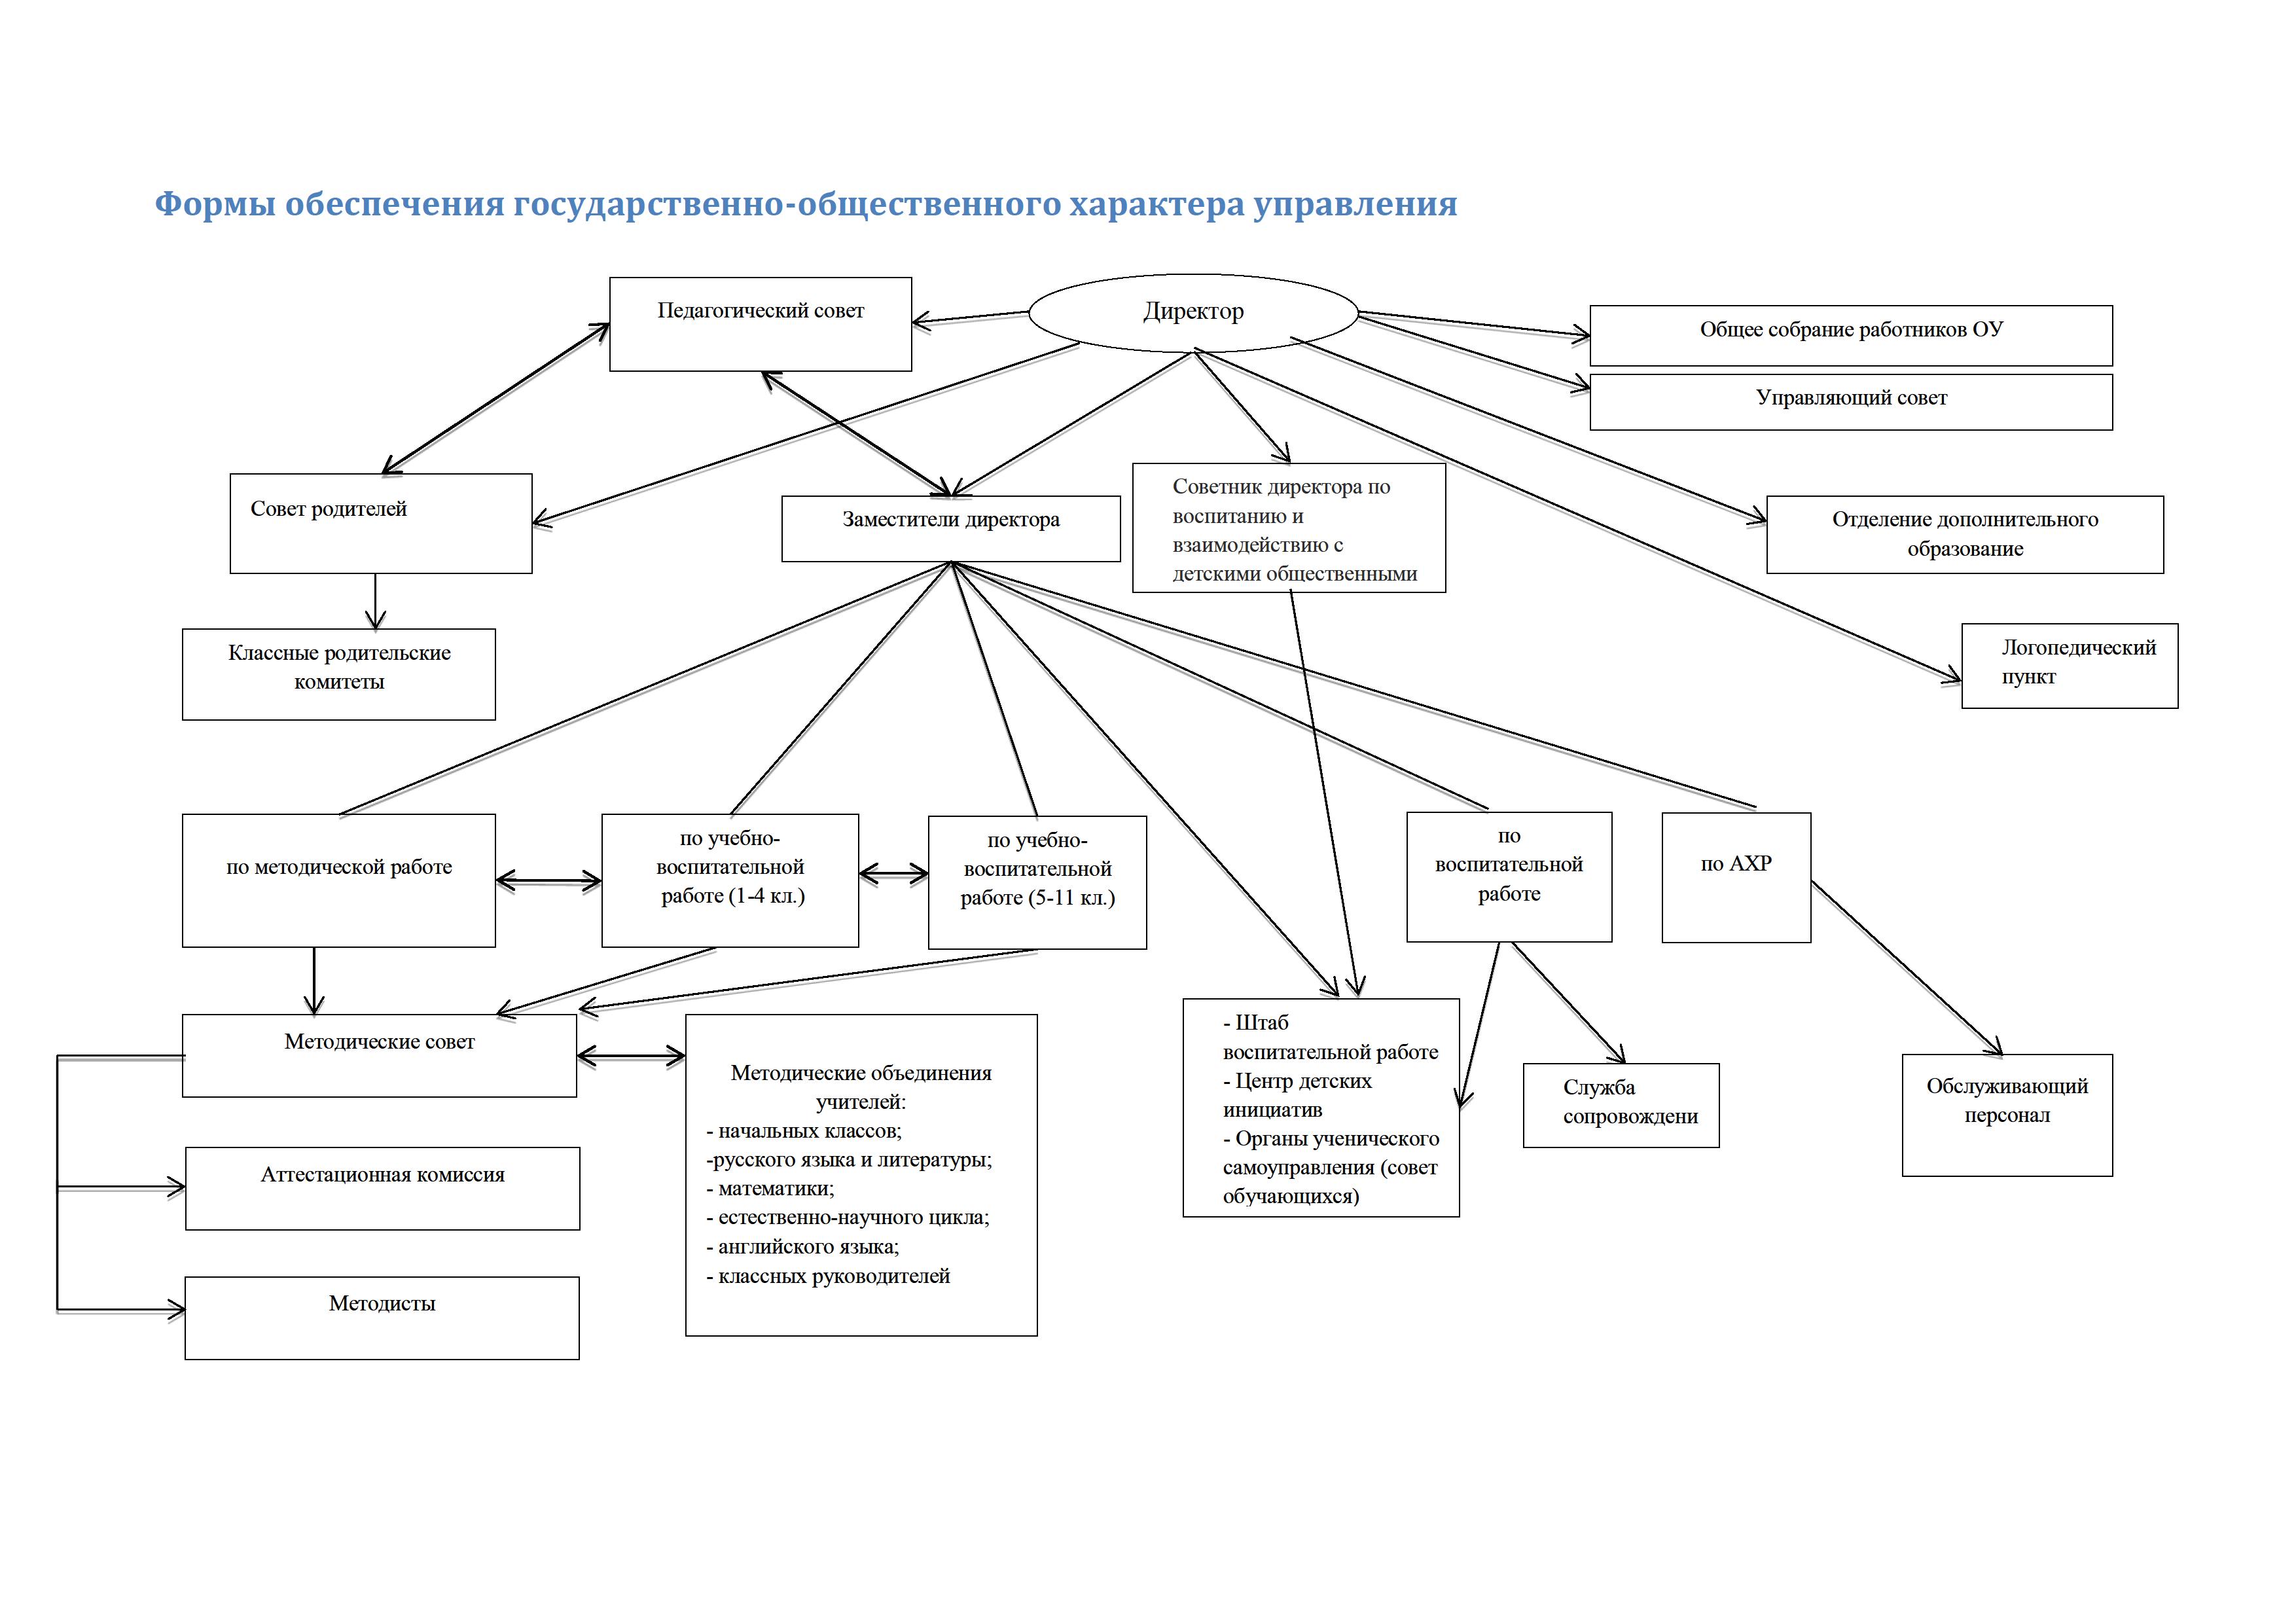 Структура управления деятельности ОУ 591 актуальная